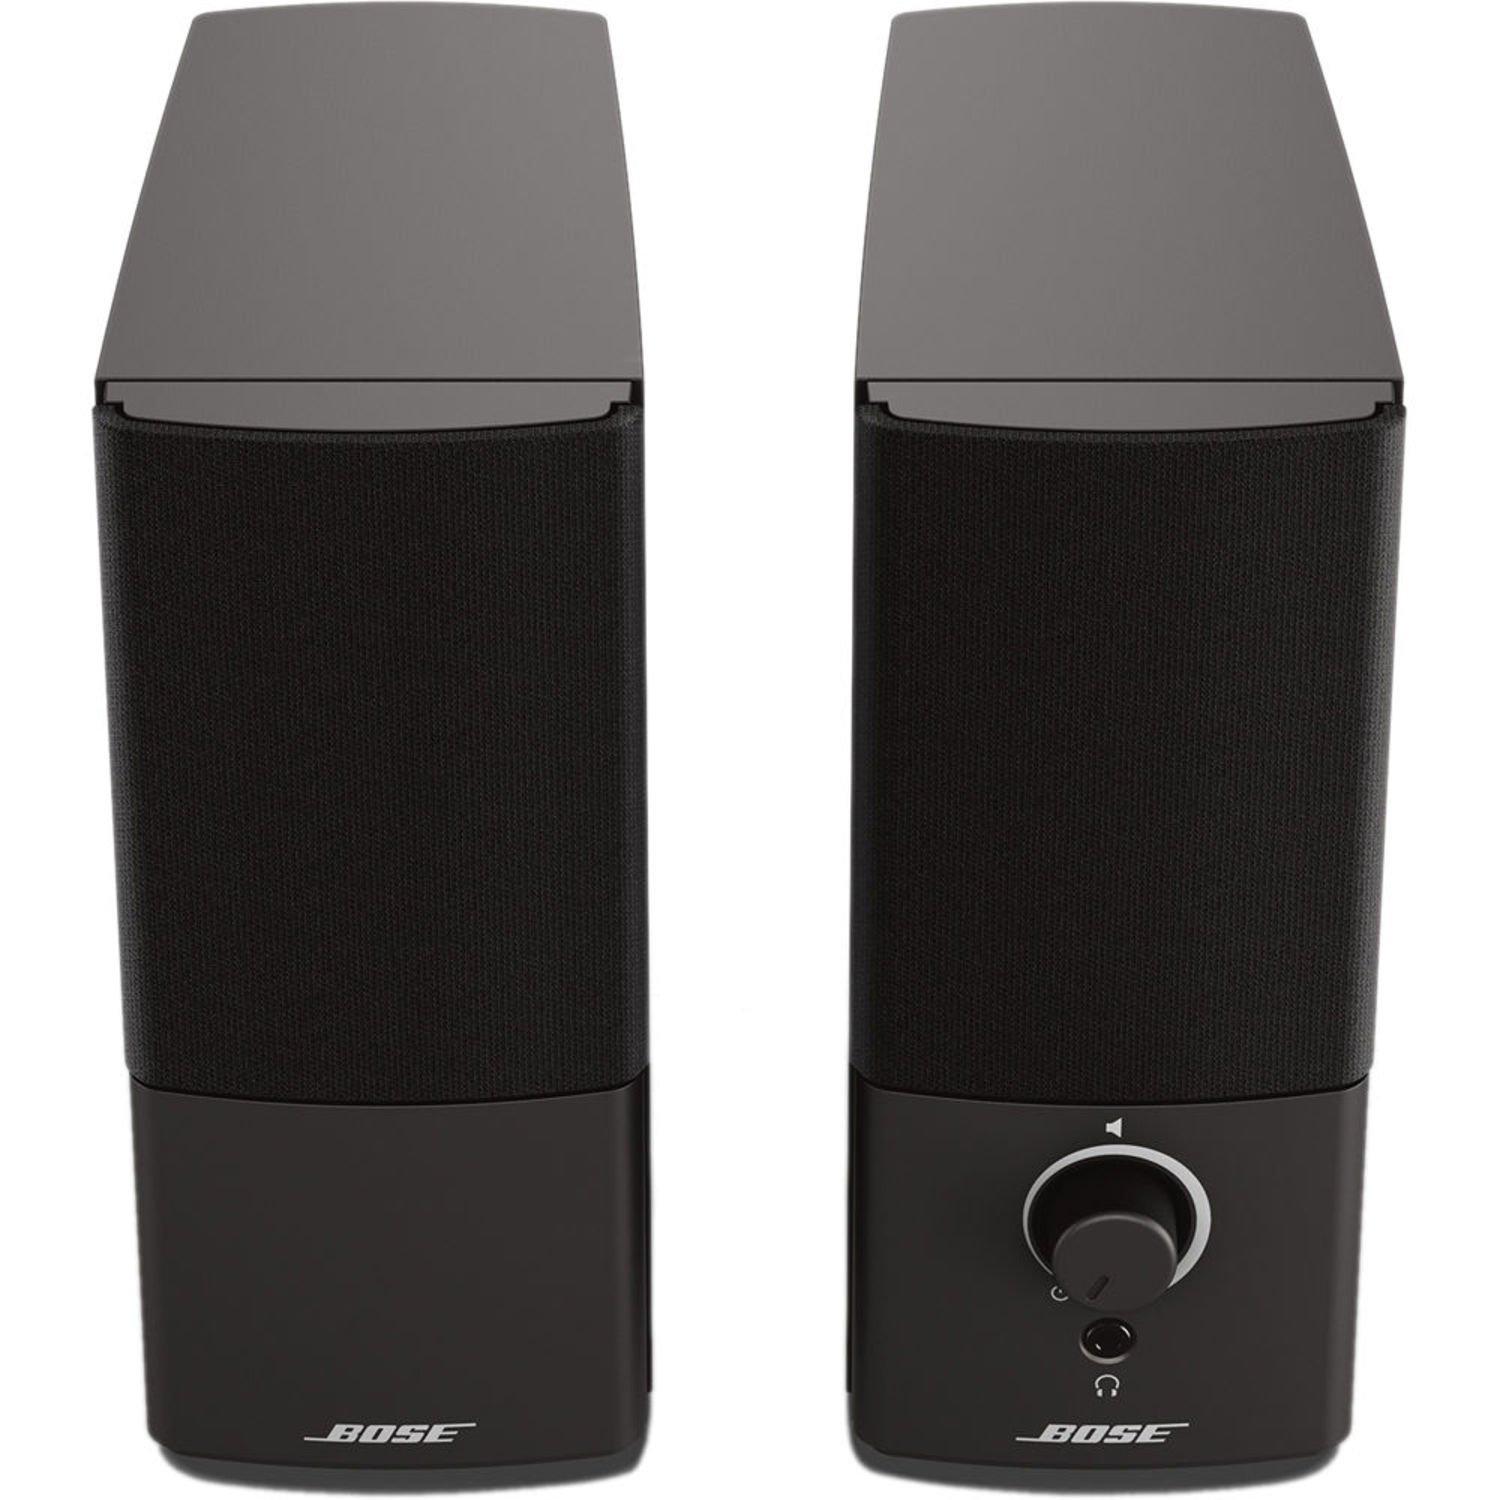 list item 5 of 10 Bose Companion 2 Series III Multimedia Speaker System, Black